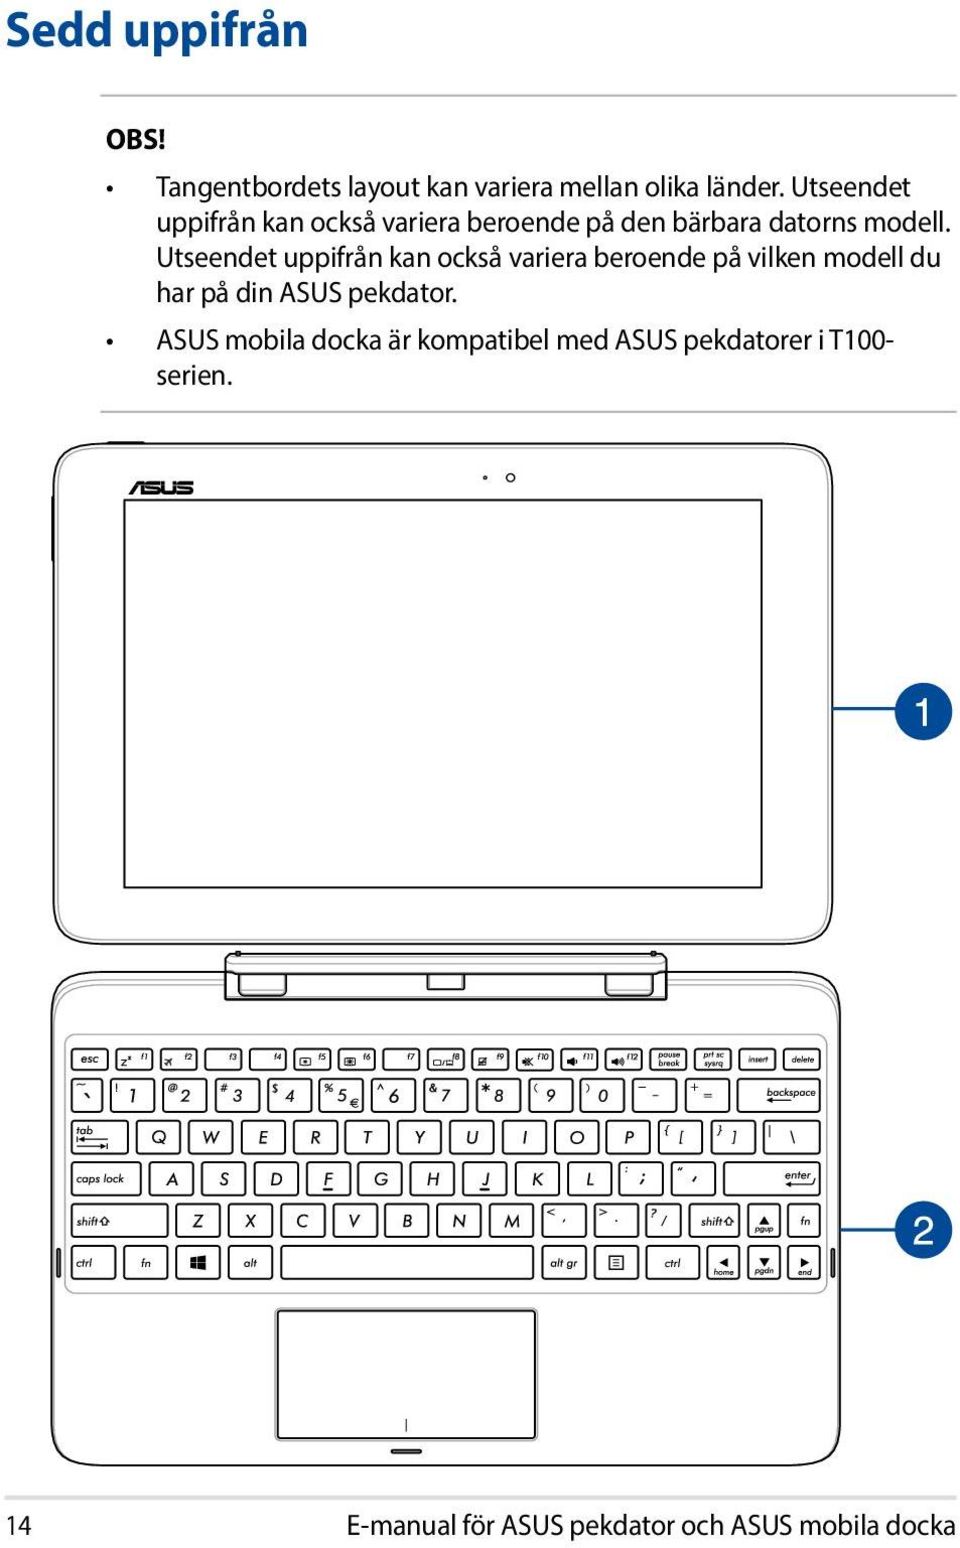 Utseendet uppifrån kan också variera beroende på vilken modell du har på din ASUS pekdator.